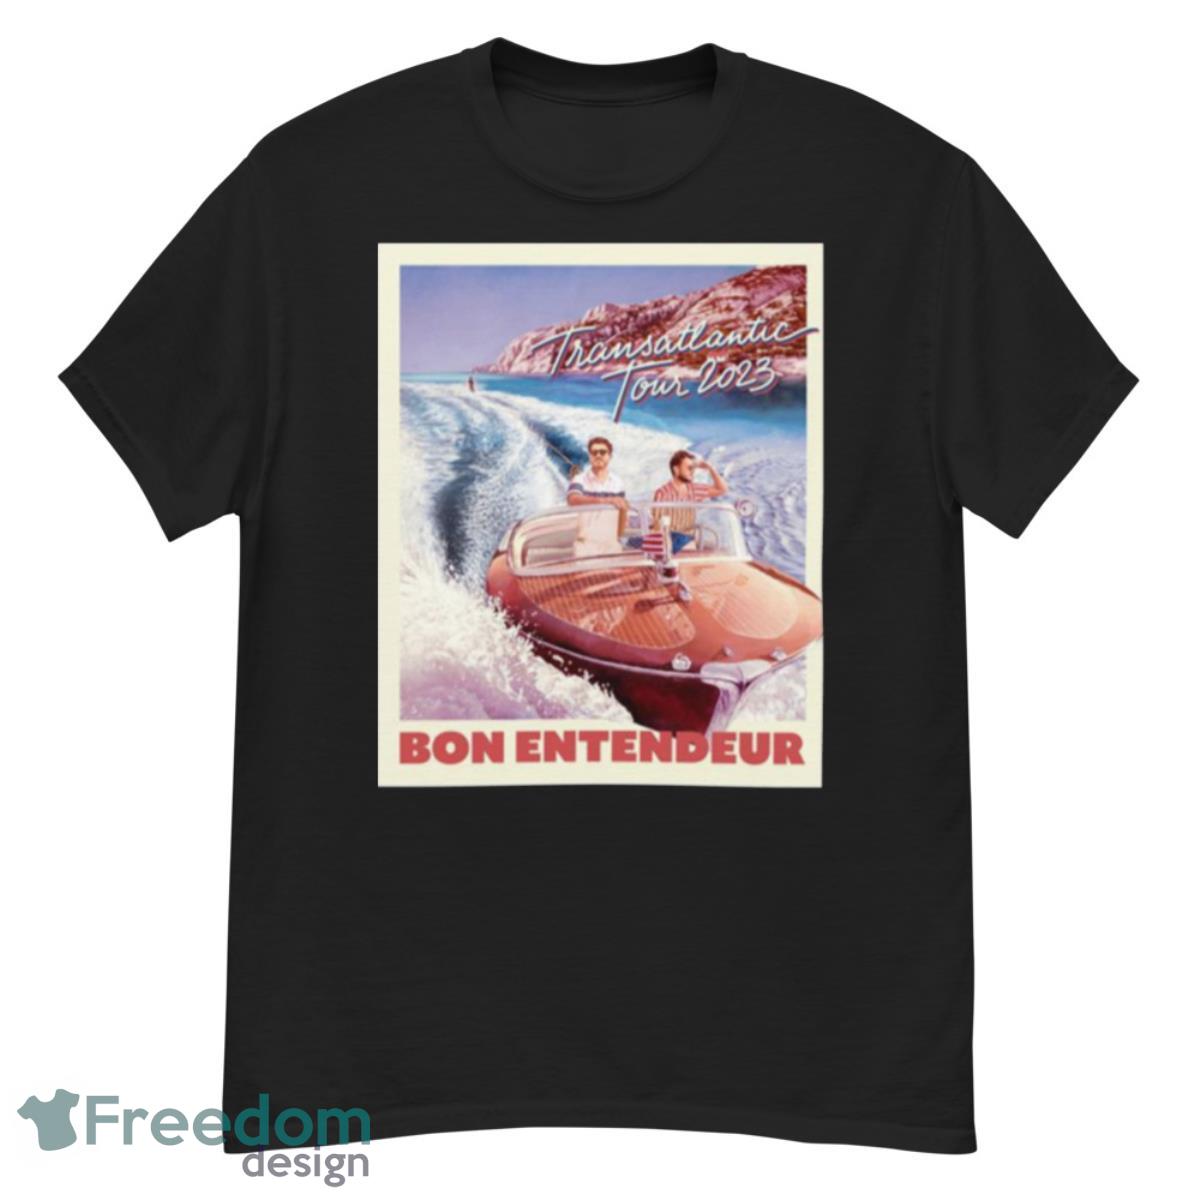 Bon Entendeur Tour 2023 shirt - G500 Men’s Classic T-Shirt